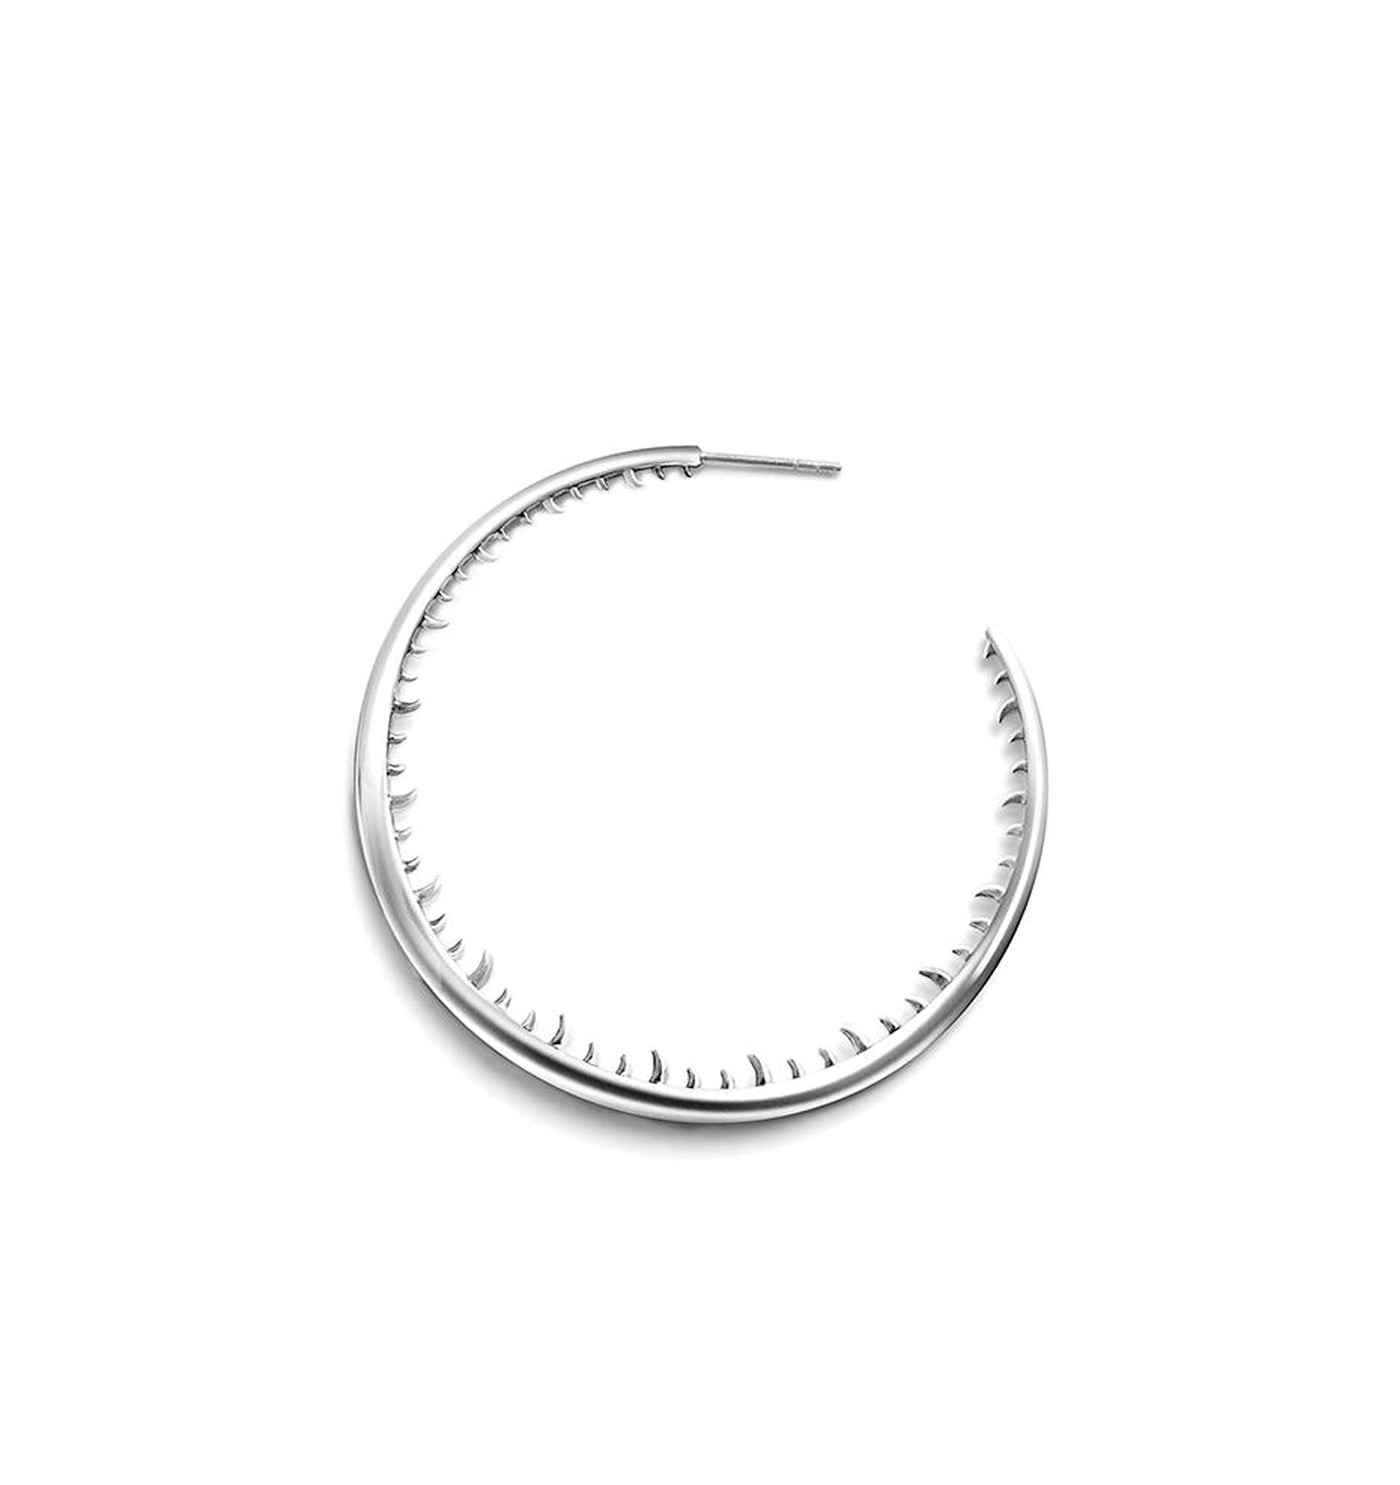 Large Bali hoop earrings | Sterling Silver - White Rhodium